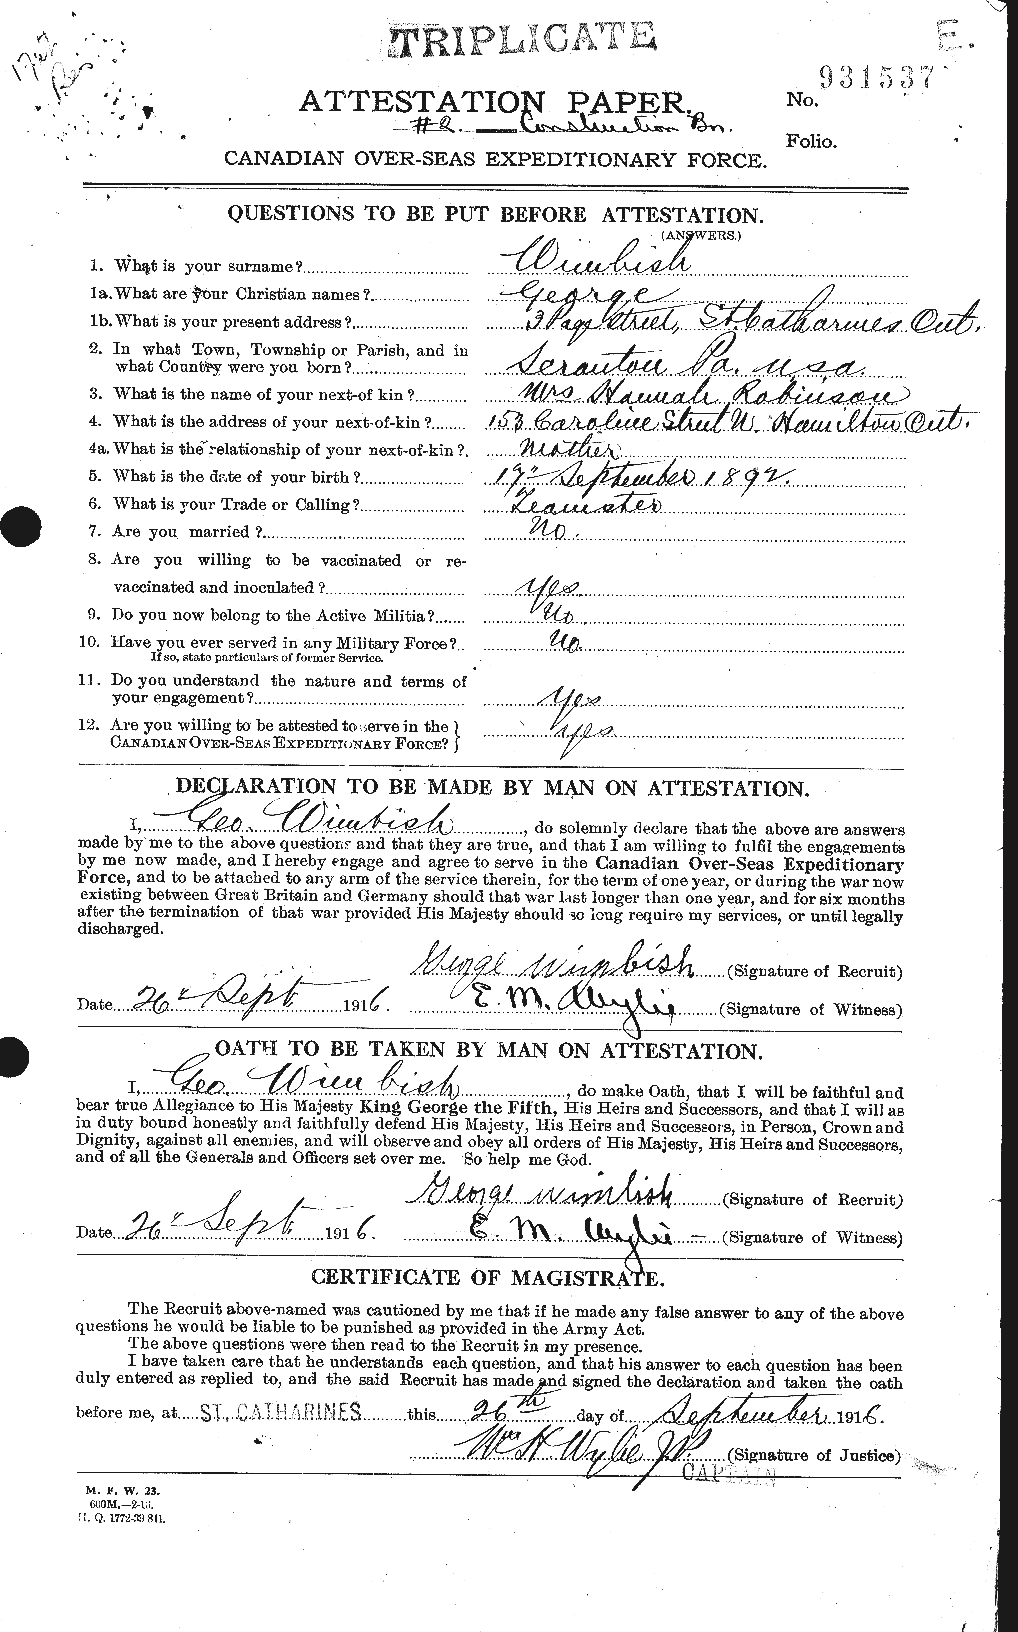 Dossiers du Personnel de la Première Guerre mondiale - CEC 667176a